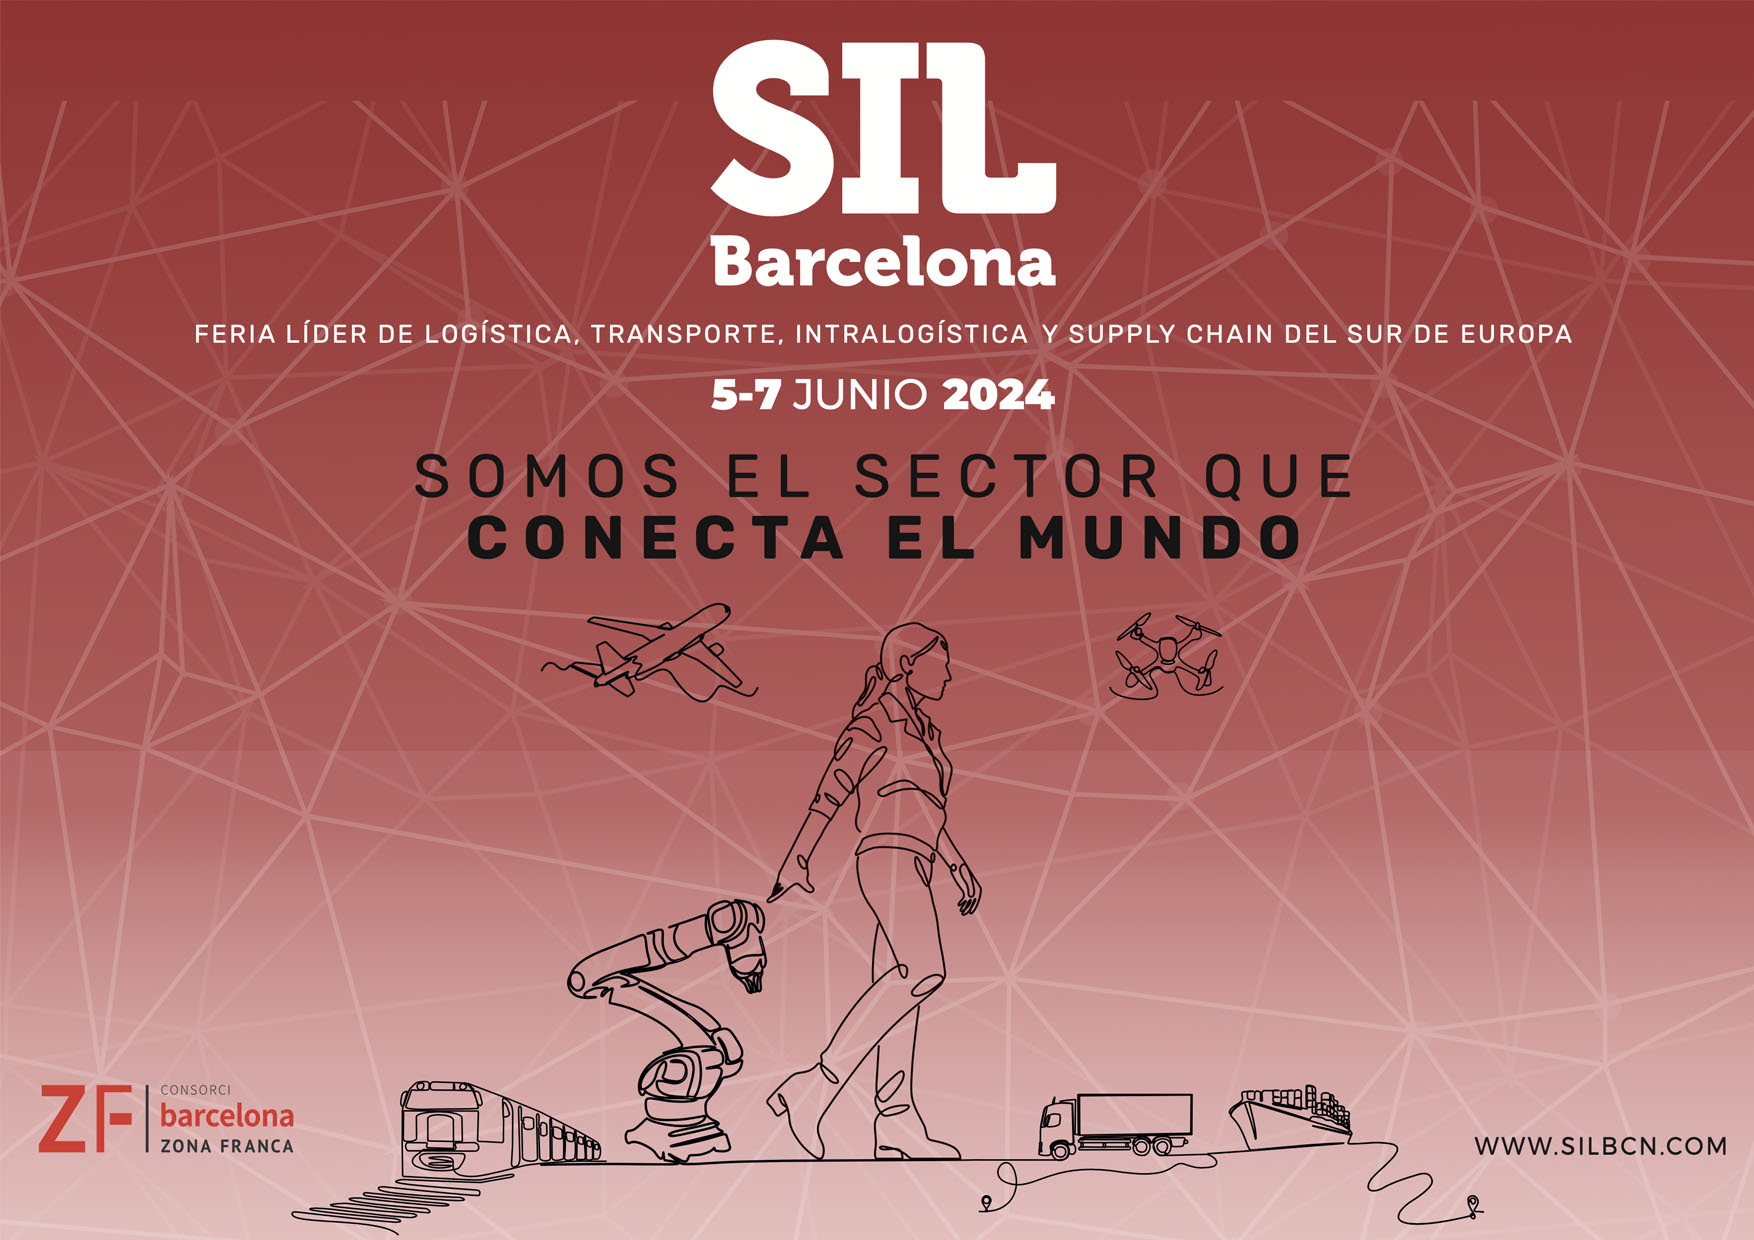 SIL – Feria líder de Logística, Transporte, Intralogística y Supply Chain del Sur de Europa